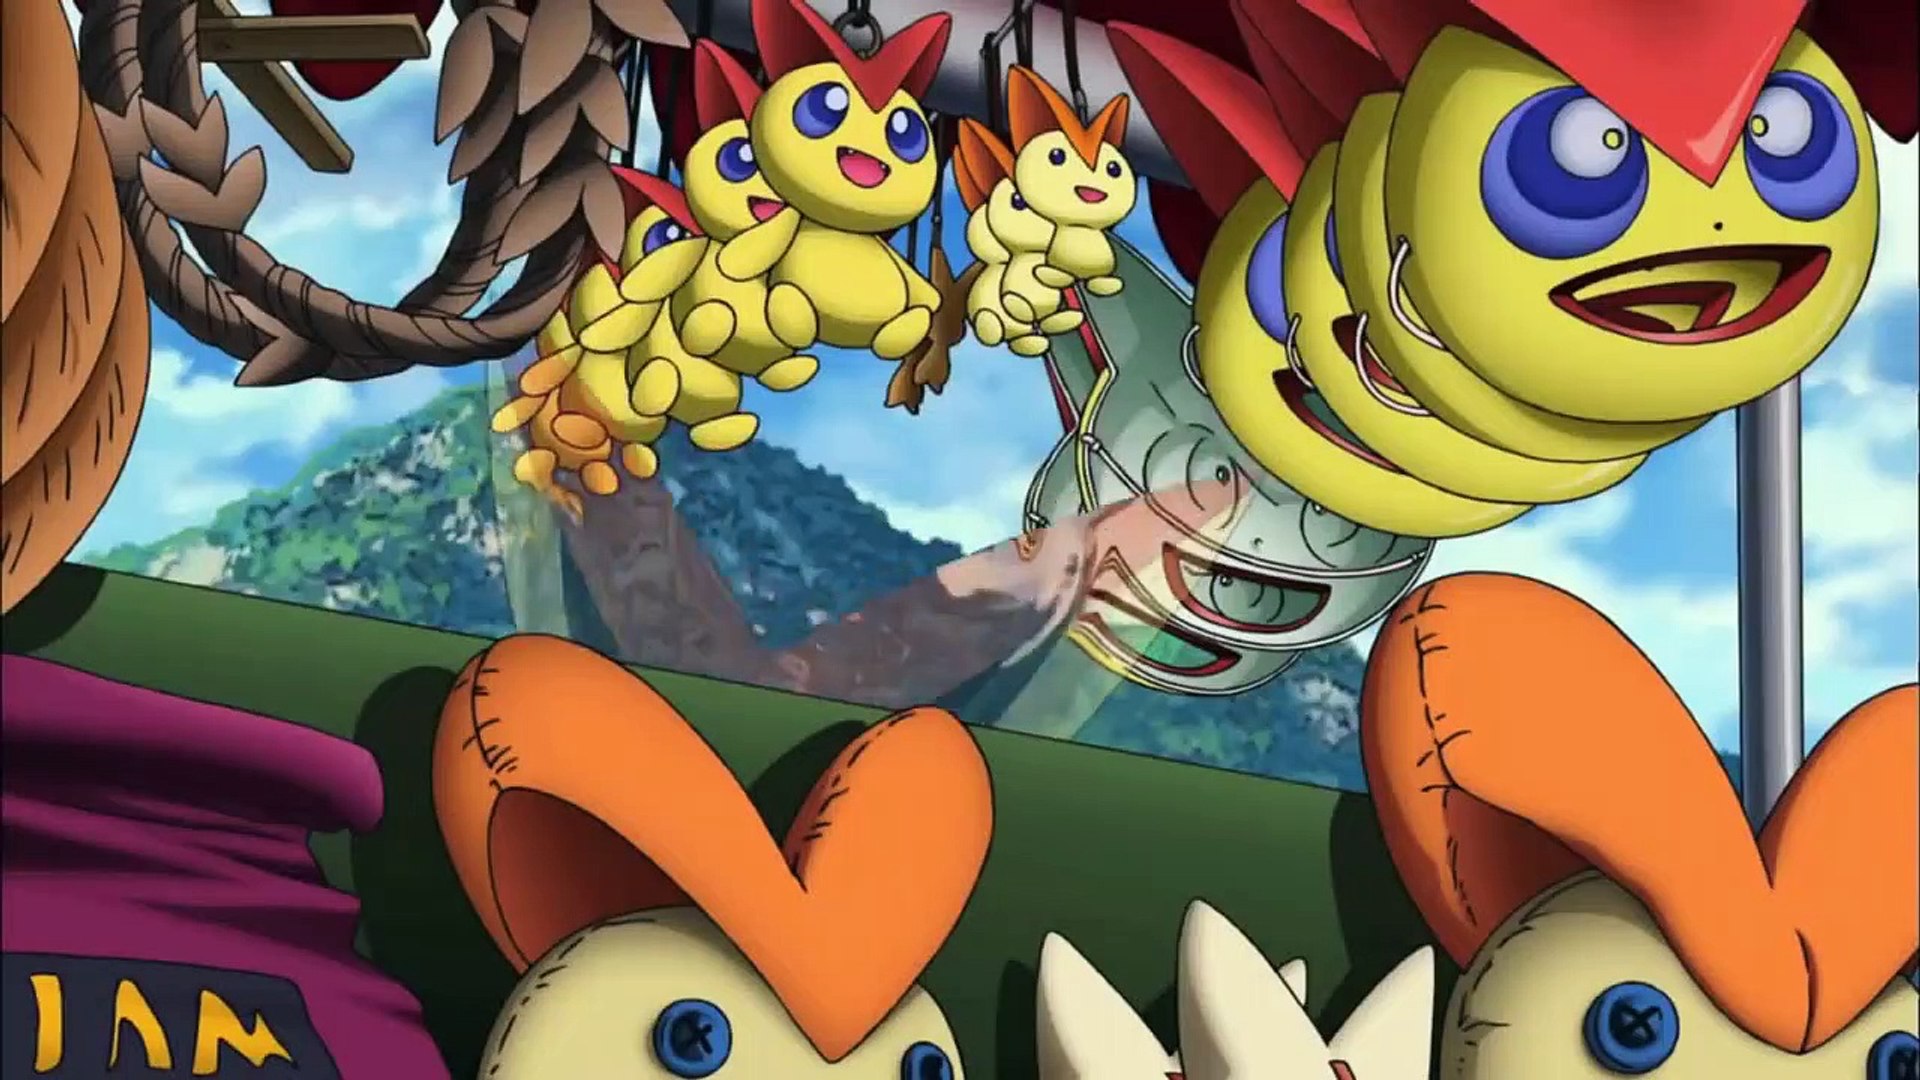 Pokémon O Filme: Preto - Victini e Reshiram filme